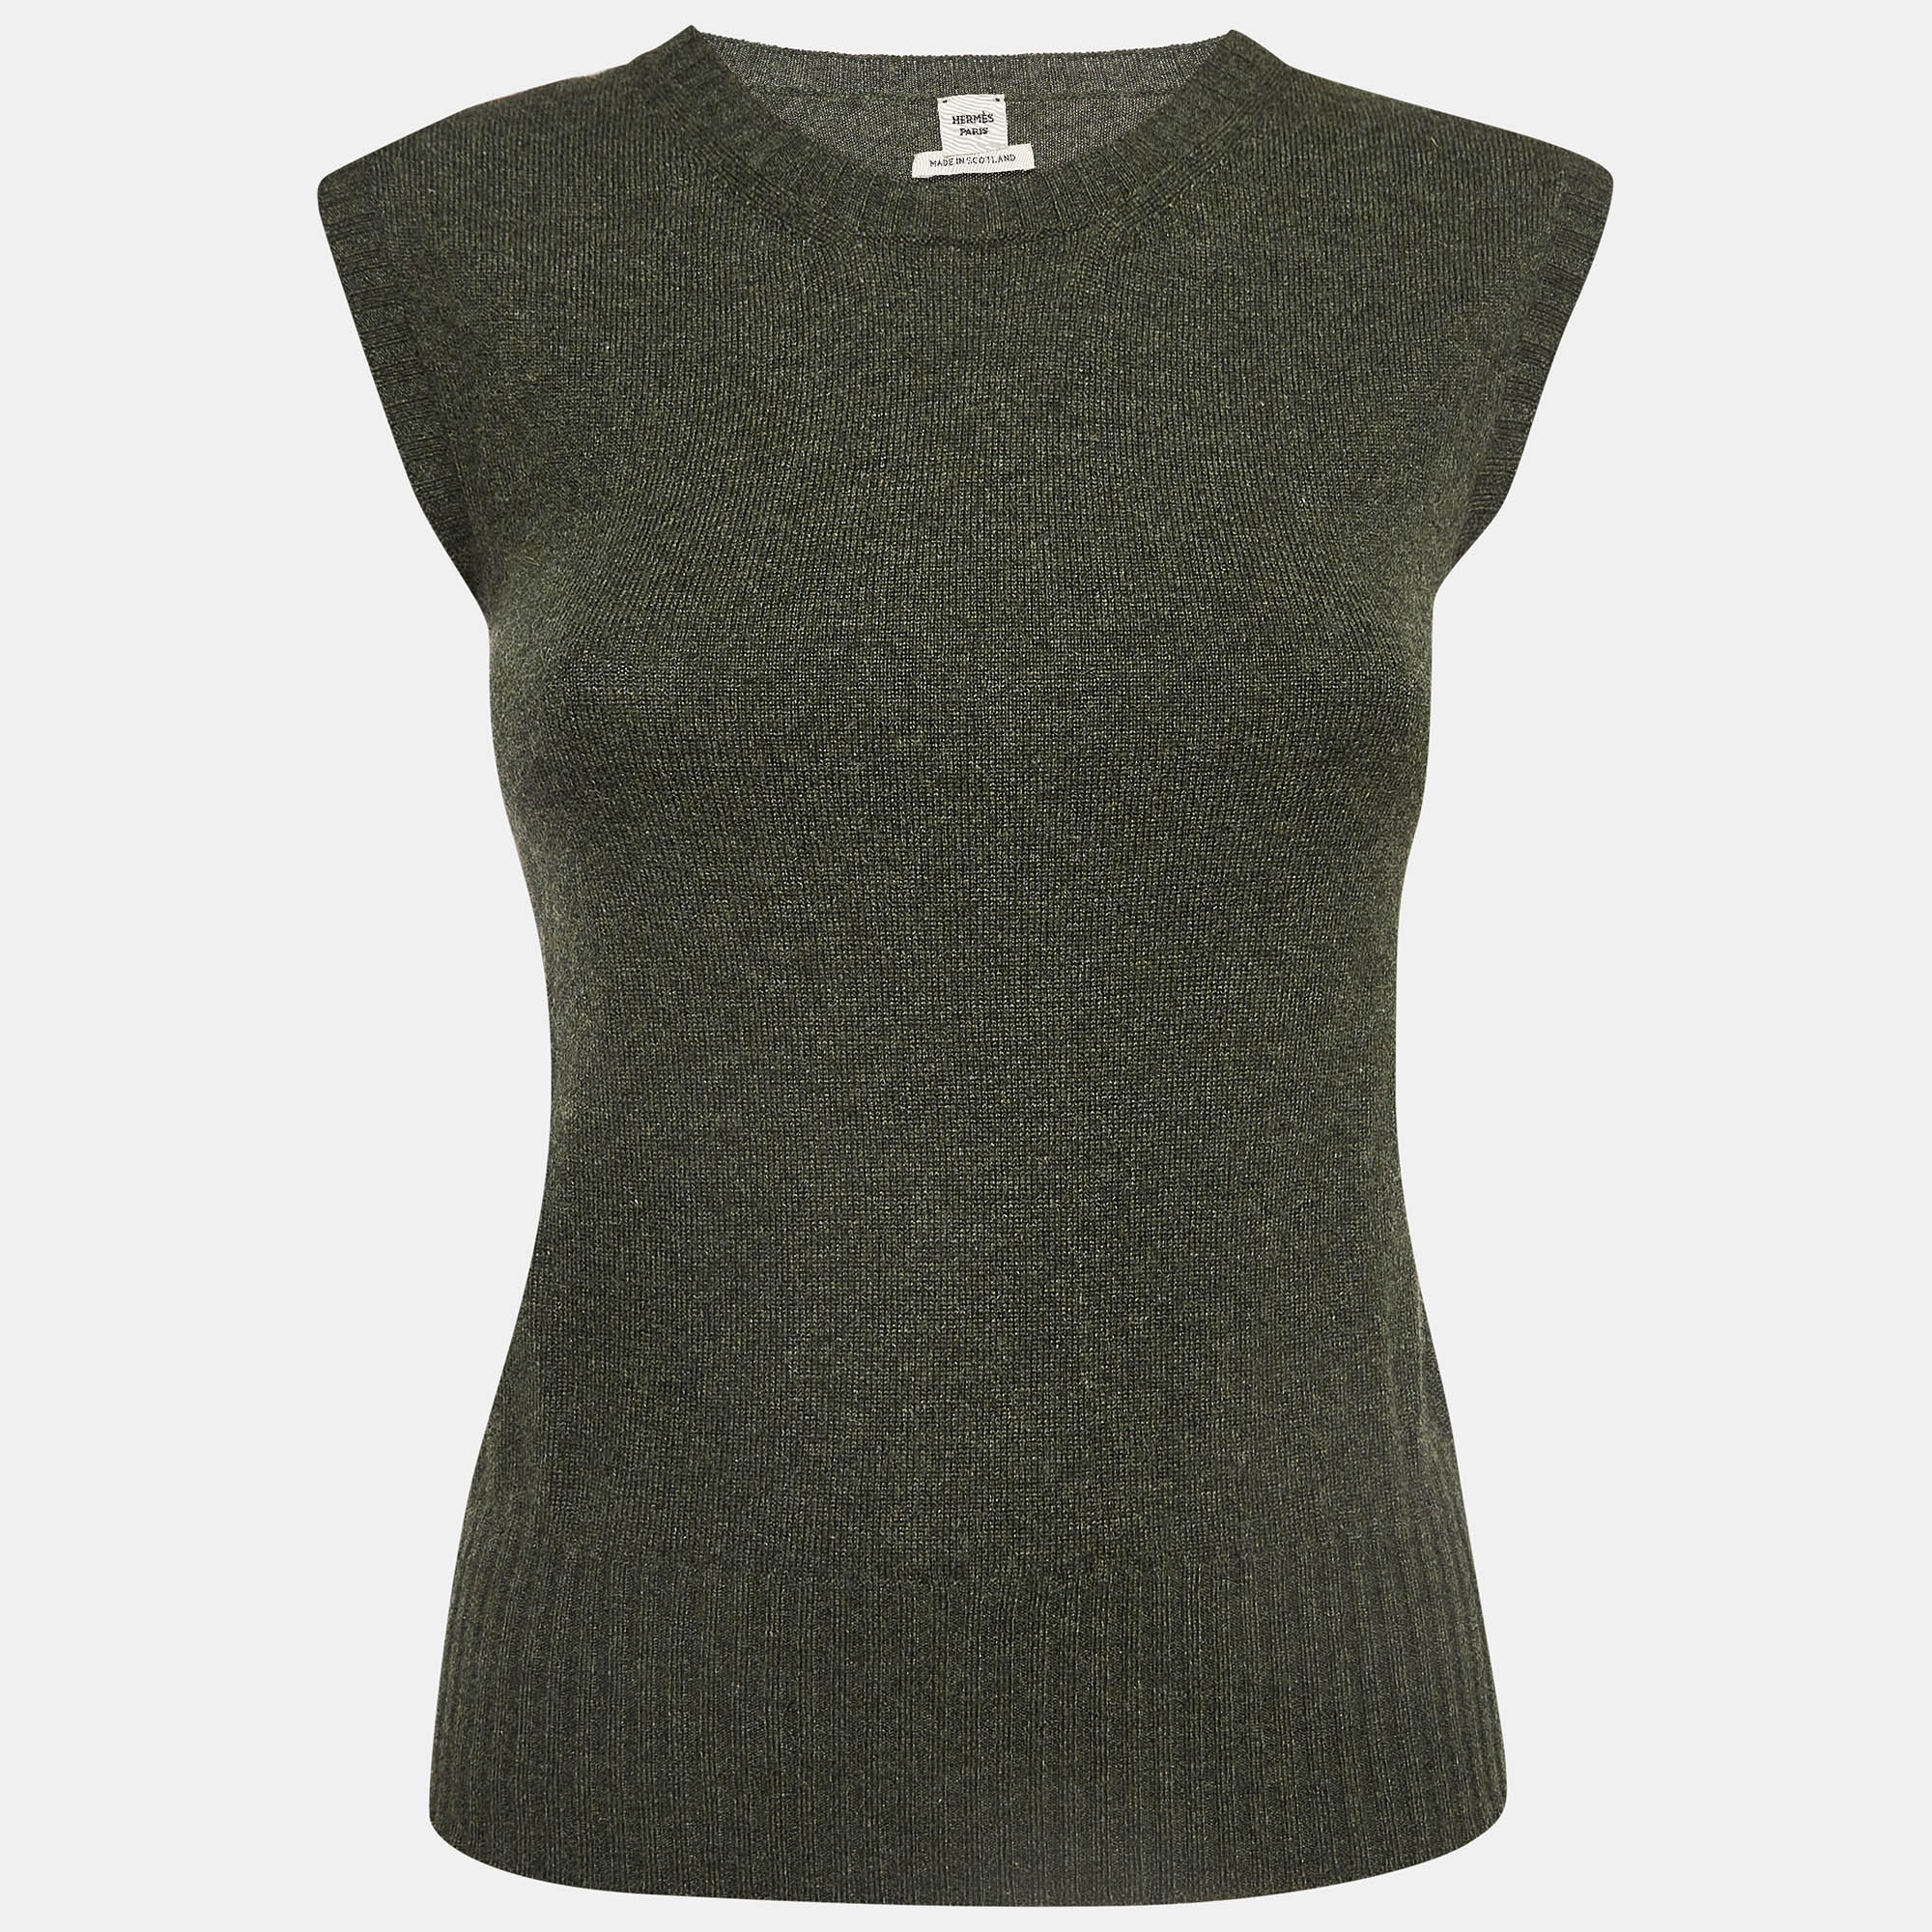 

Hermes Olive Green Cashmere Knit Sweater Vest